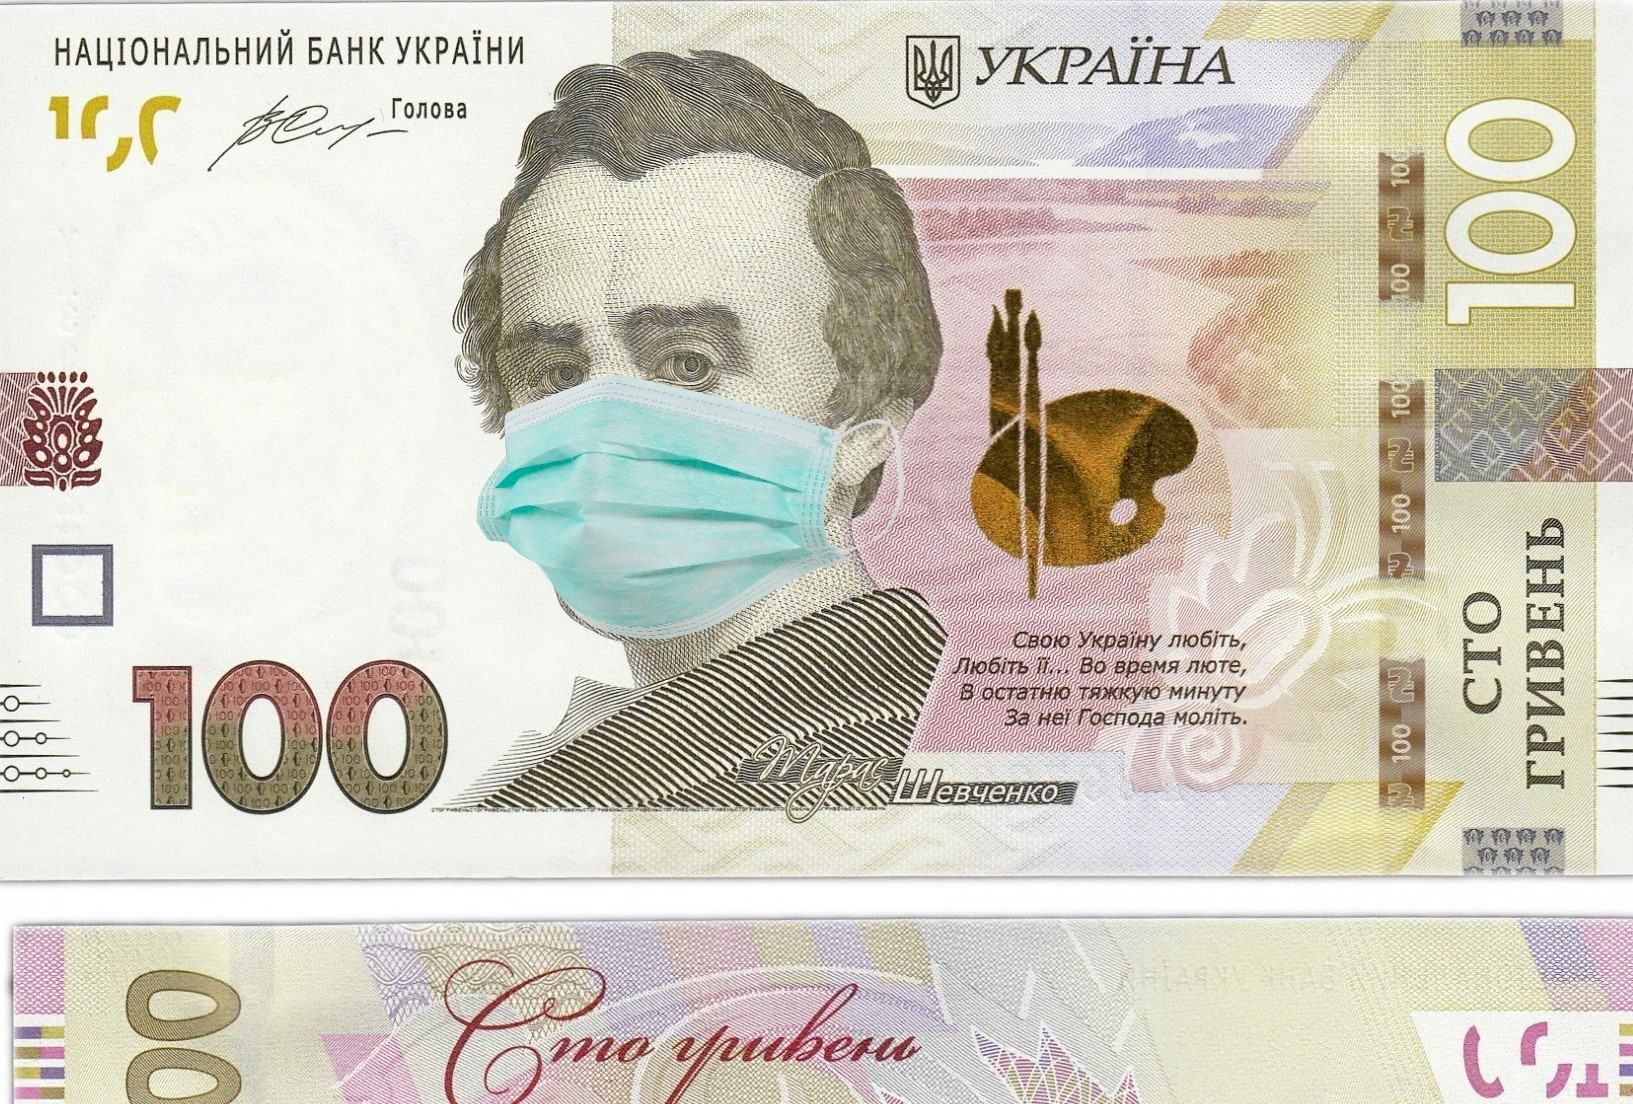 Нарушений на 400 миллионов гривен: результаты аудита "коронавирусного" фонда